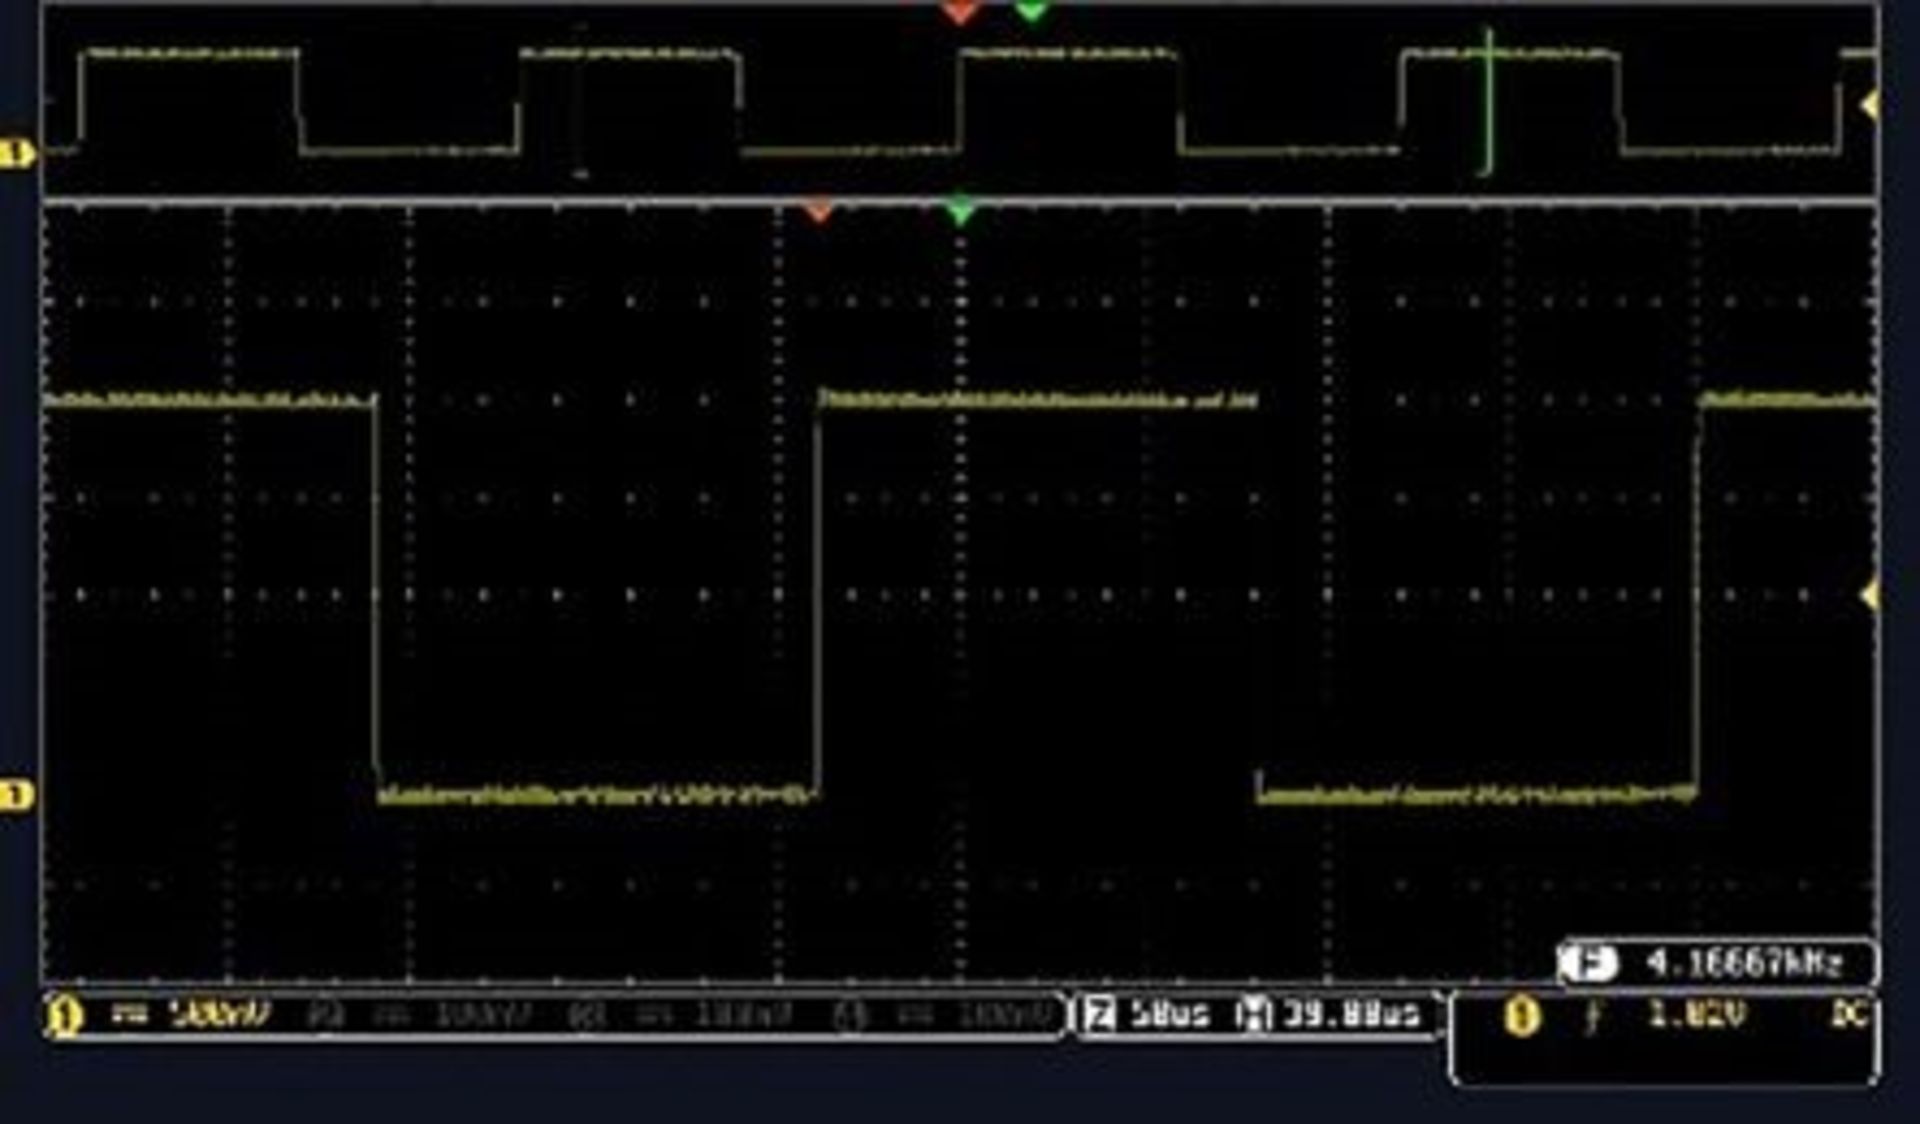 IDS Series IDS-1102B Digital Oscilloscope, Digital Storage, 2 Channels, 100MHz - Bild 2 aus 2